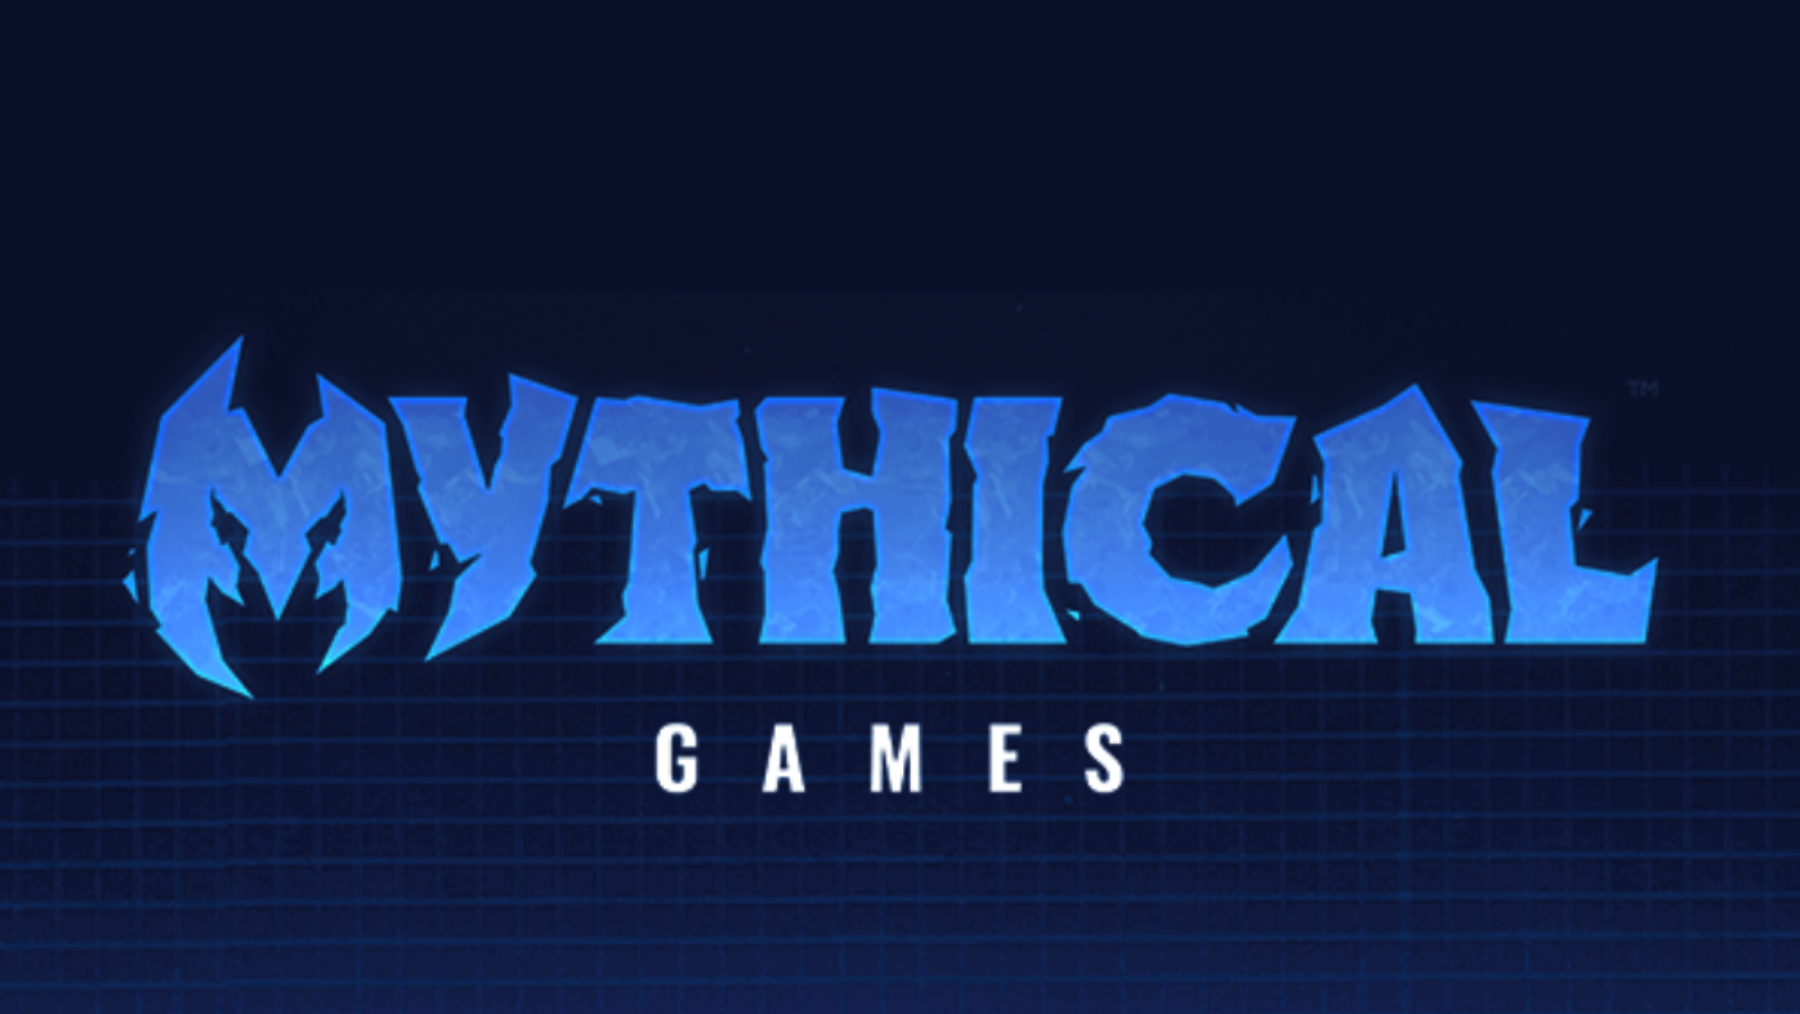 mythical_games_obyavila_o_sozdanii_dao_sovmestno_s_20_kompaniyami.png